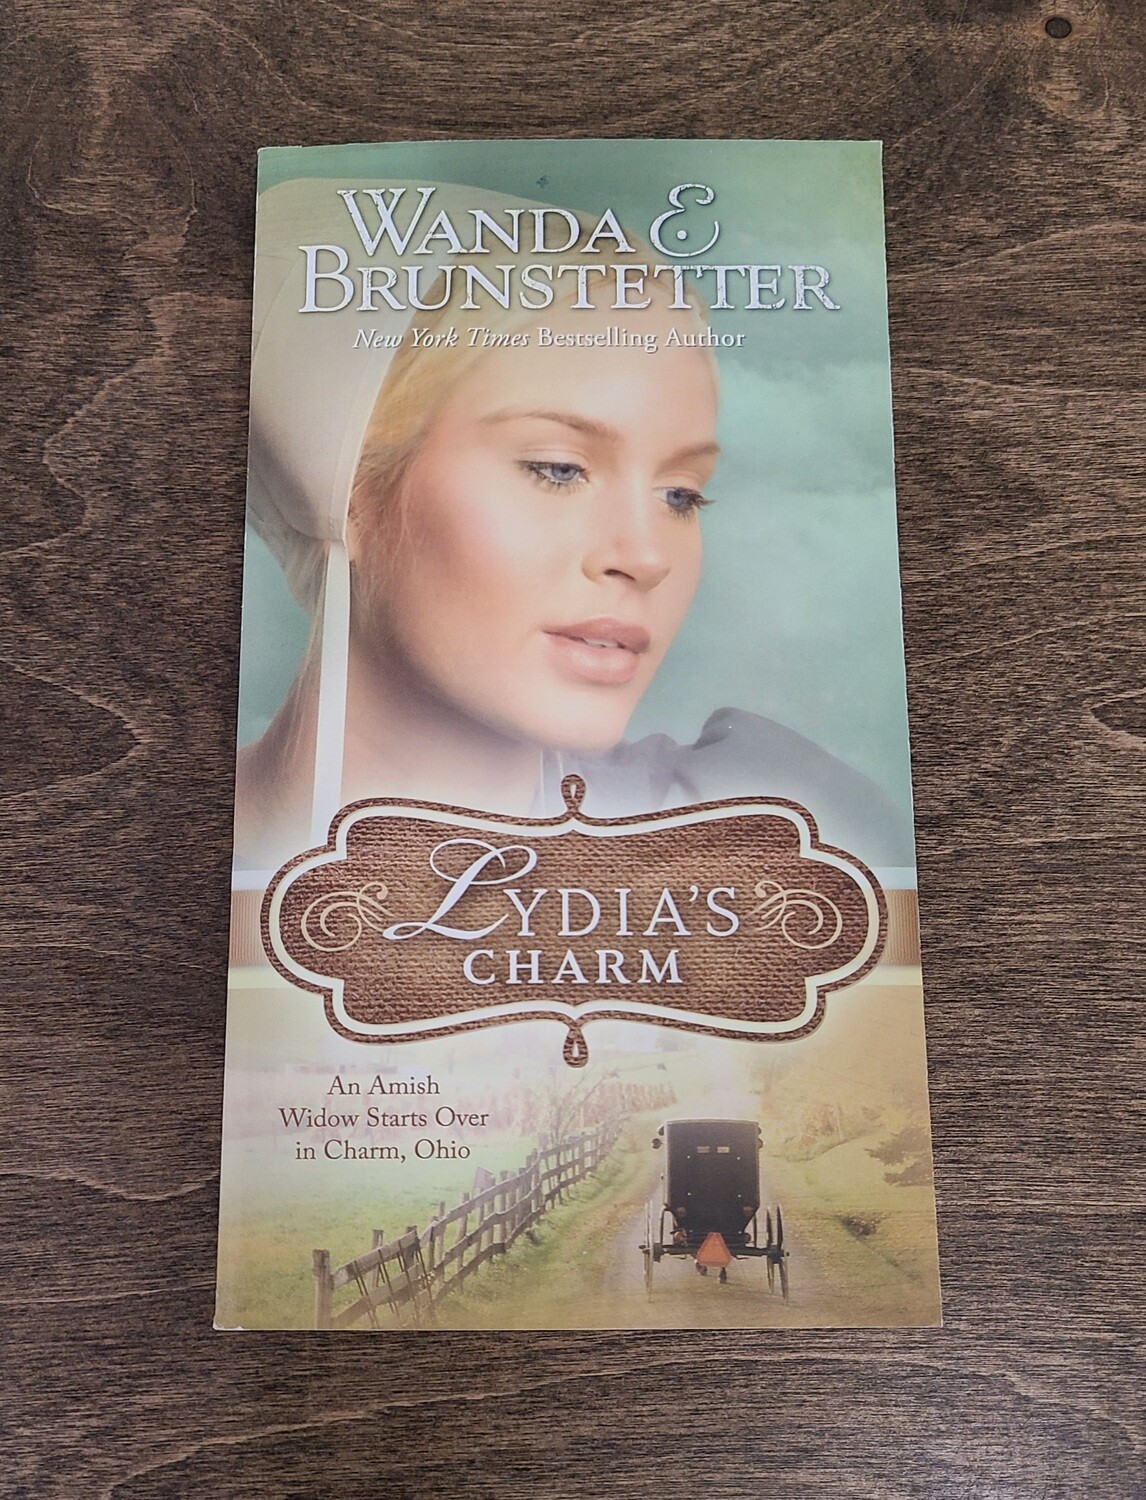 Lydia's Charm by Wanda E. Brunstetter